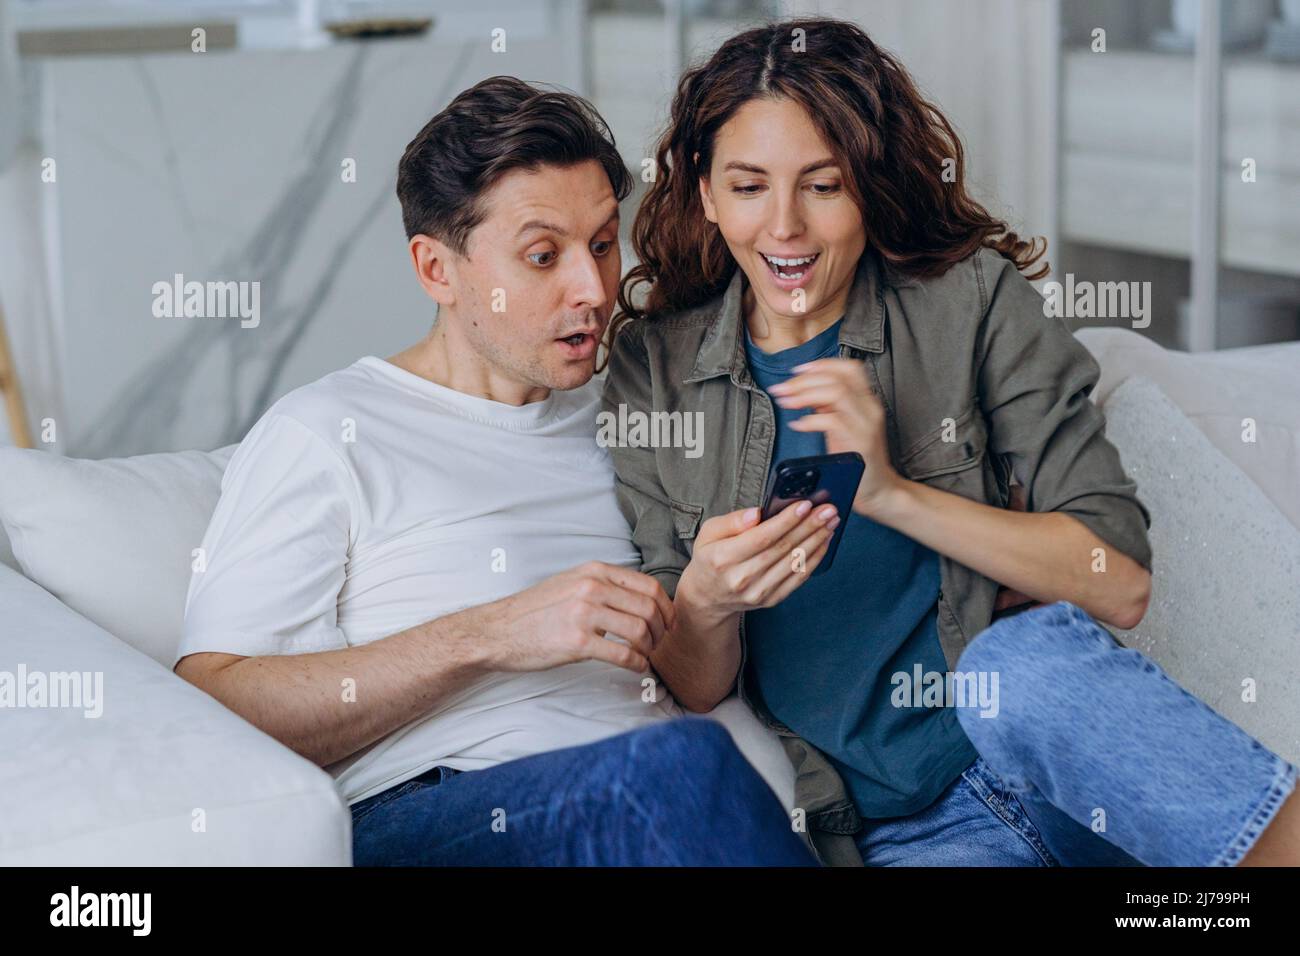 Emocionado mujer casada con pelo largo rizado y hombre morena sonrisa feliz leyendo buenas noticias en Internet a través de un smartphone sentado en el sofá Foto de stock